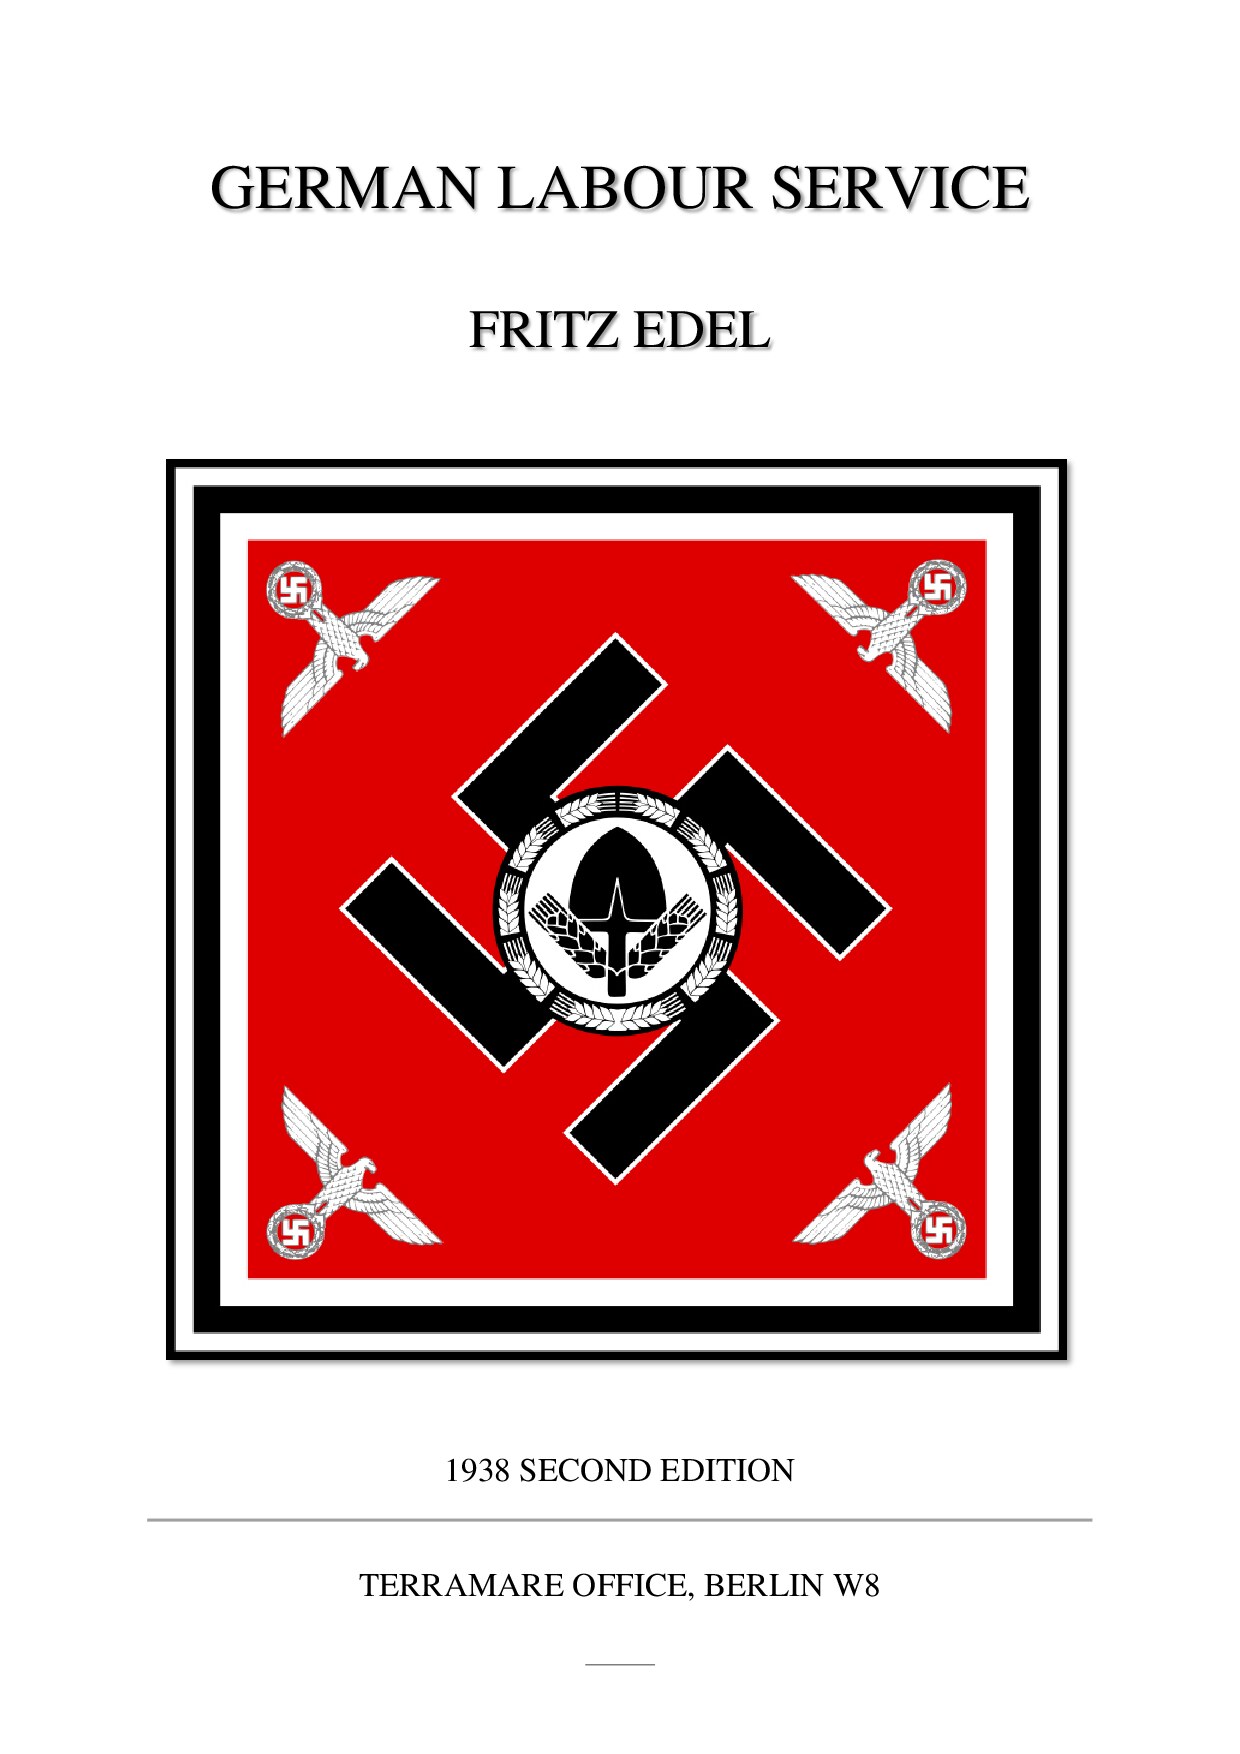 Edel, Fritz; German Labour Service